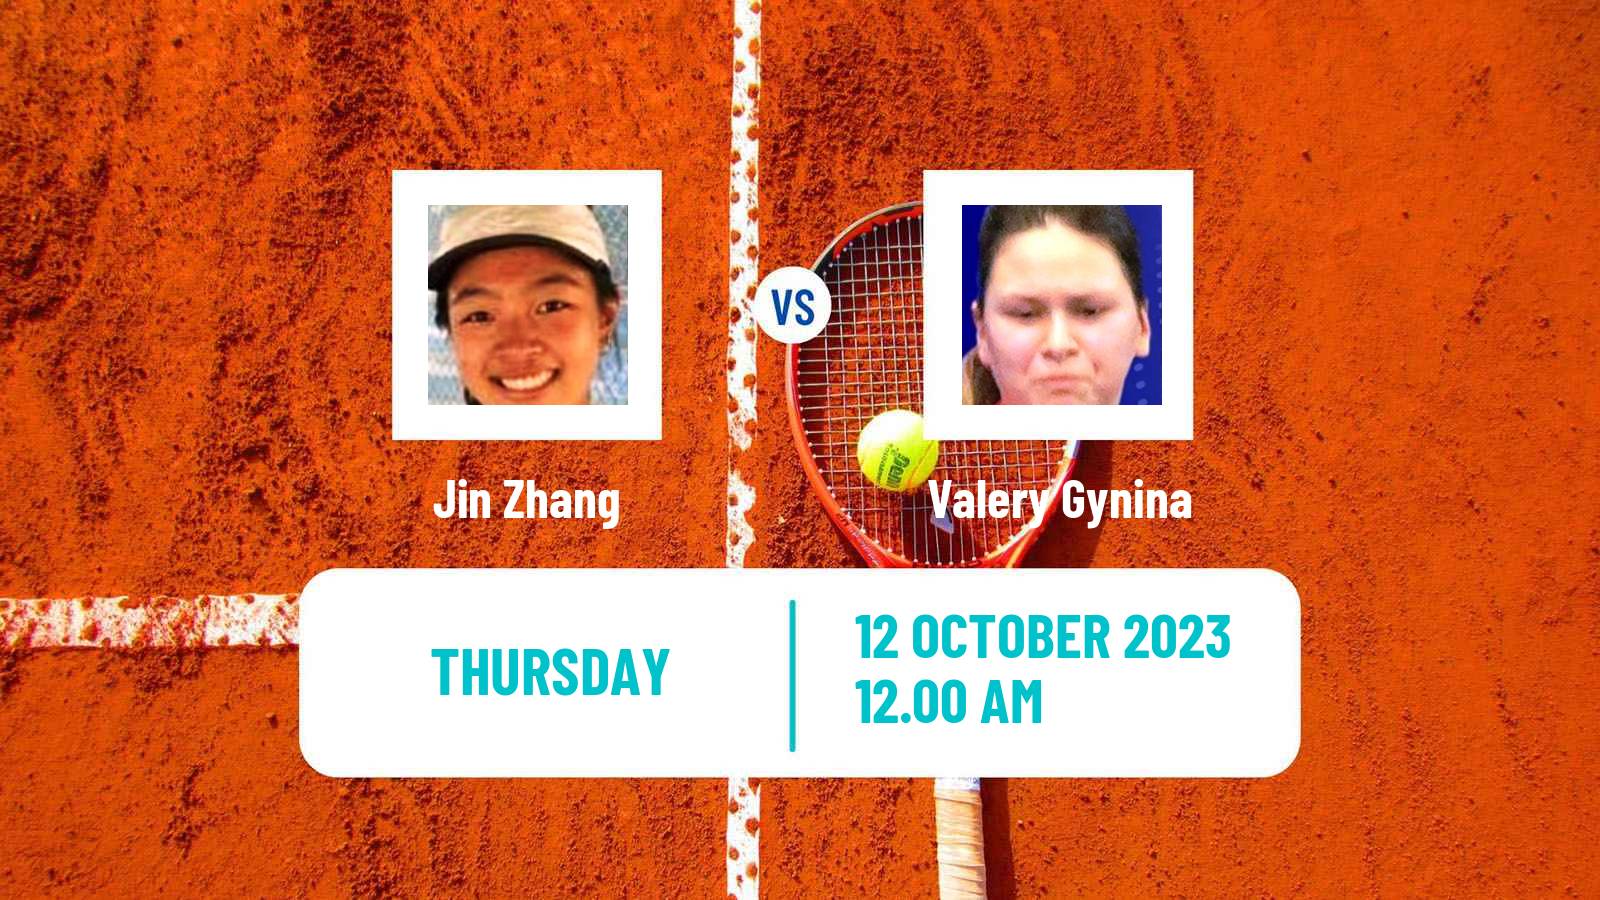 Tennis ITF W15 Hua Hin Women Jin Zhang - Valery Gynina